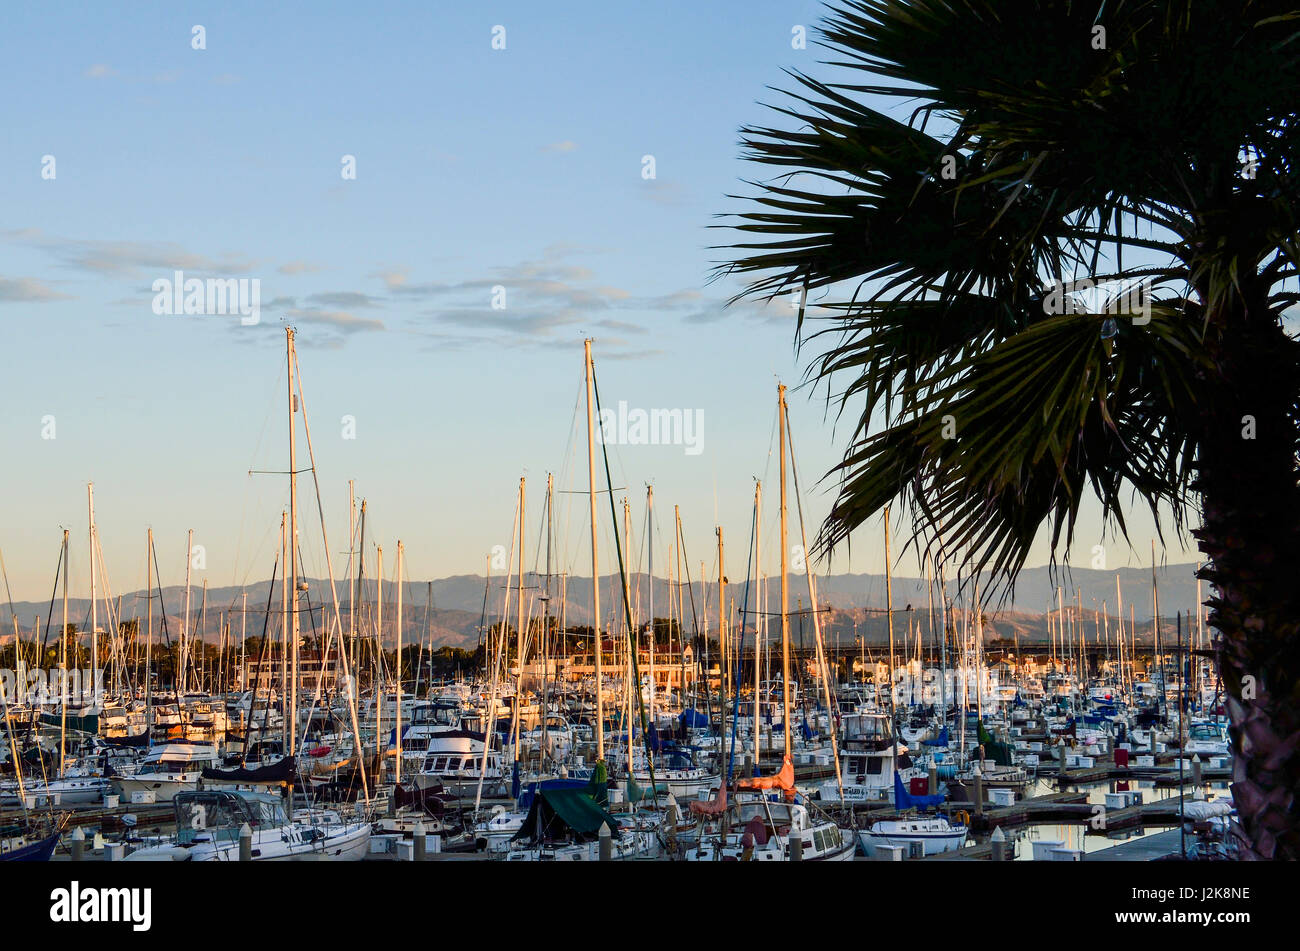 Many boats on marina during sunrise in Oxnard, California Stock Photo